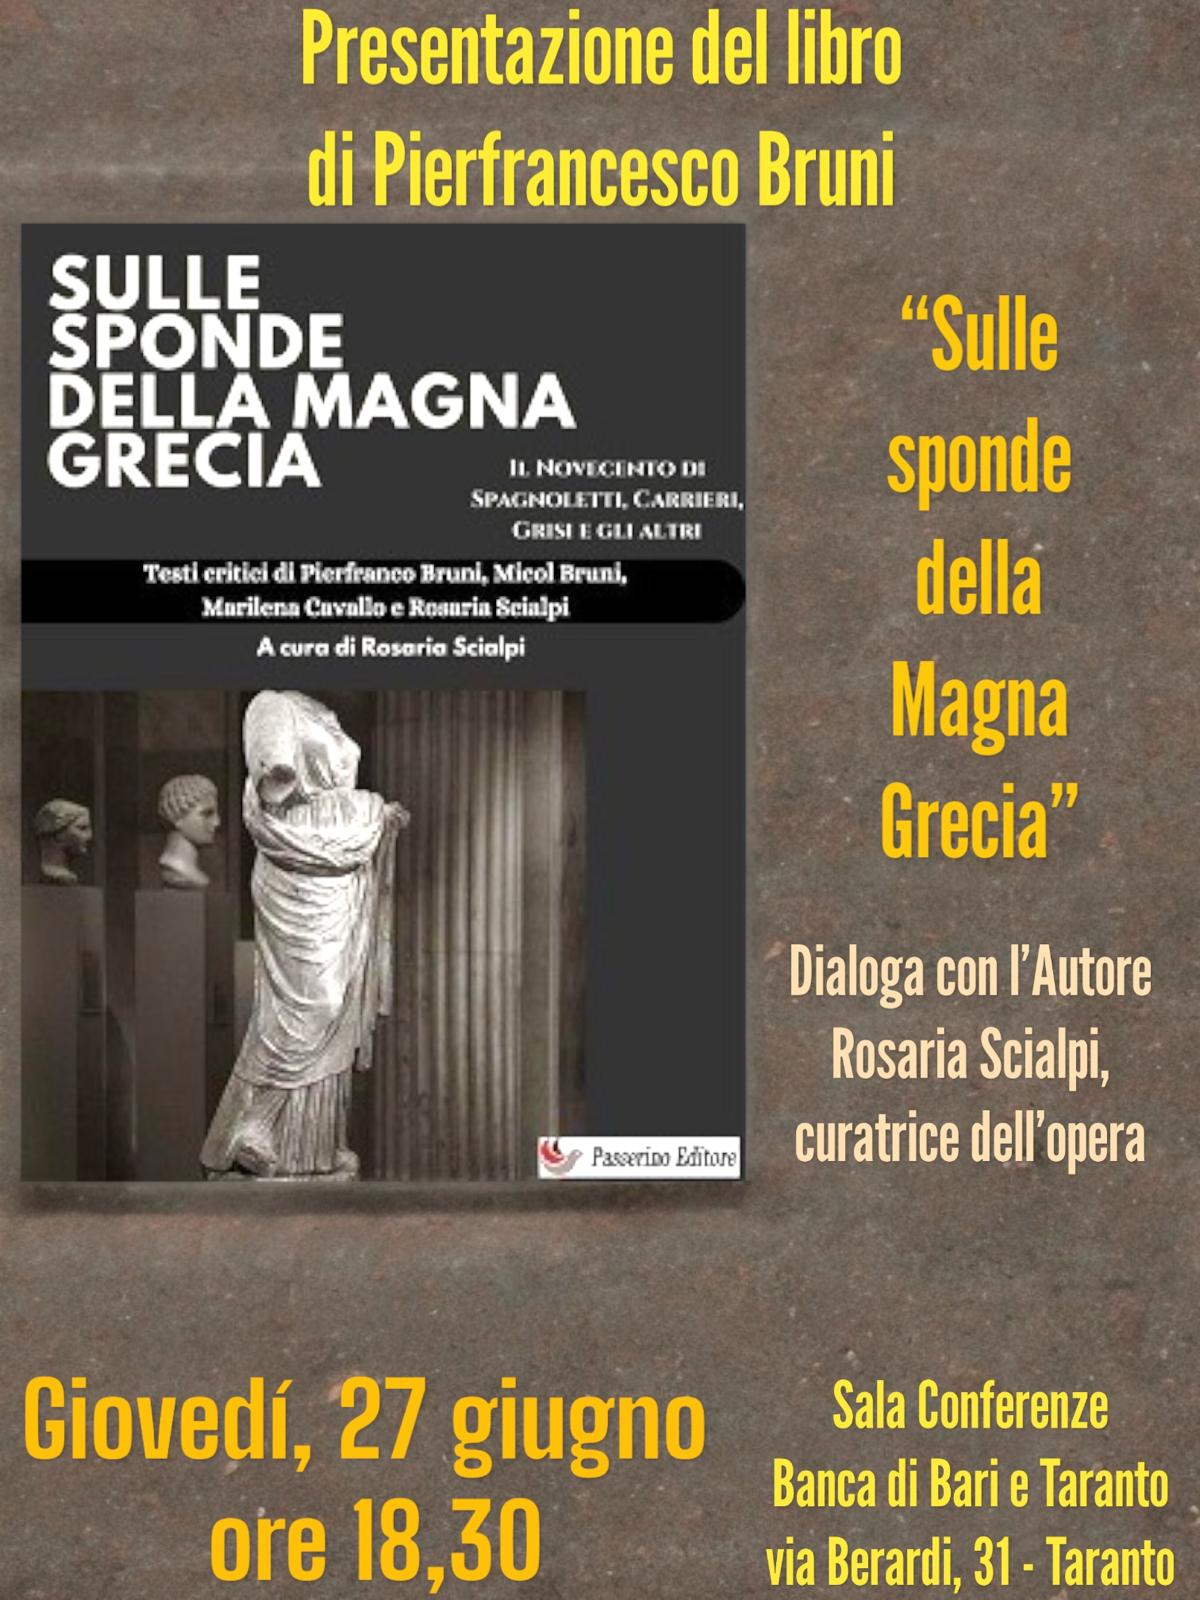 Sulle sponde della Magna Grecia: a Taranto la presentazione del saggio che inaugura nuovipercorsi di studio sulla letteratura del Novecento